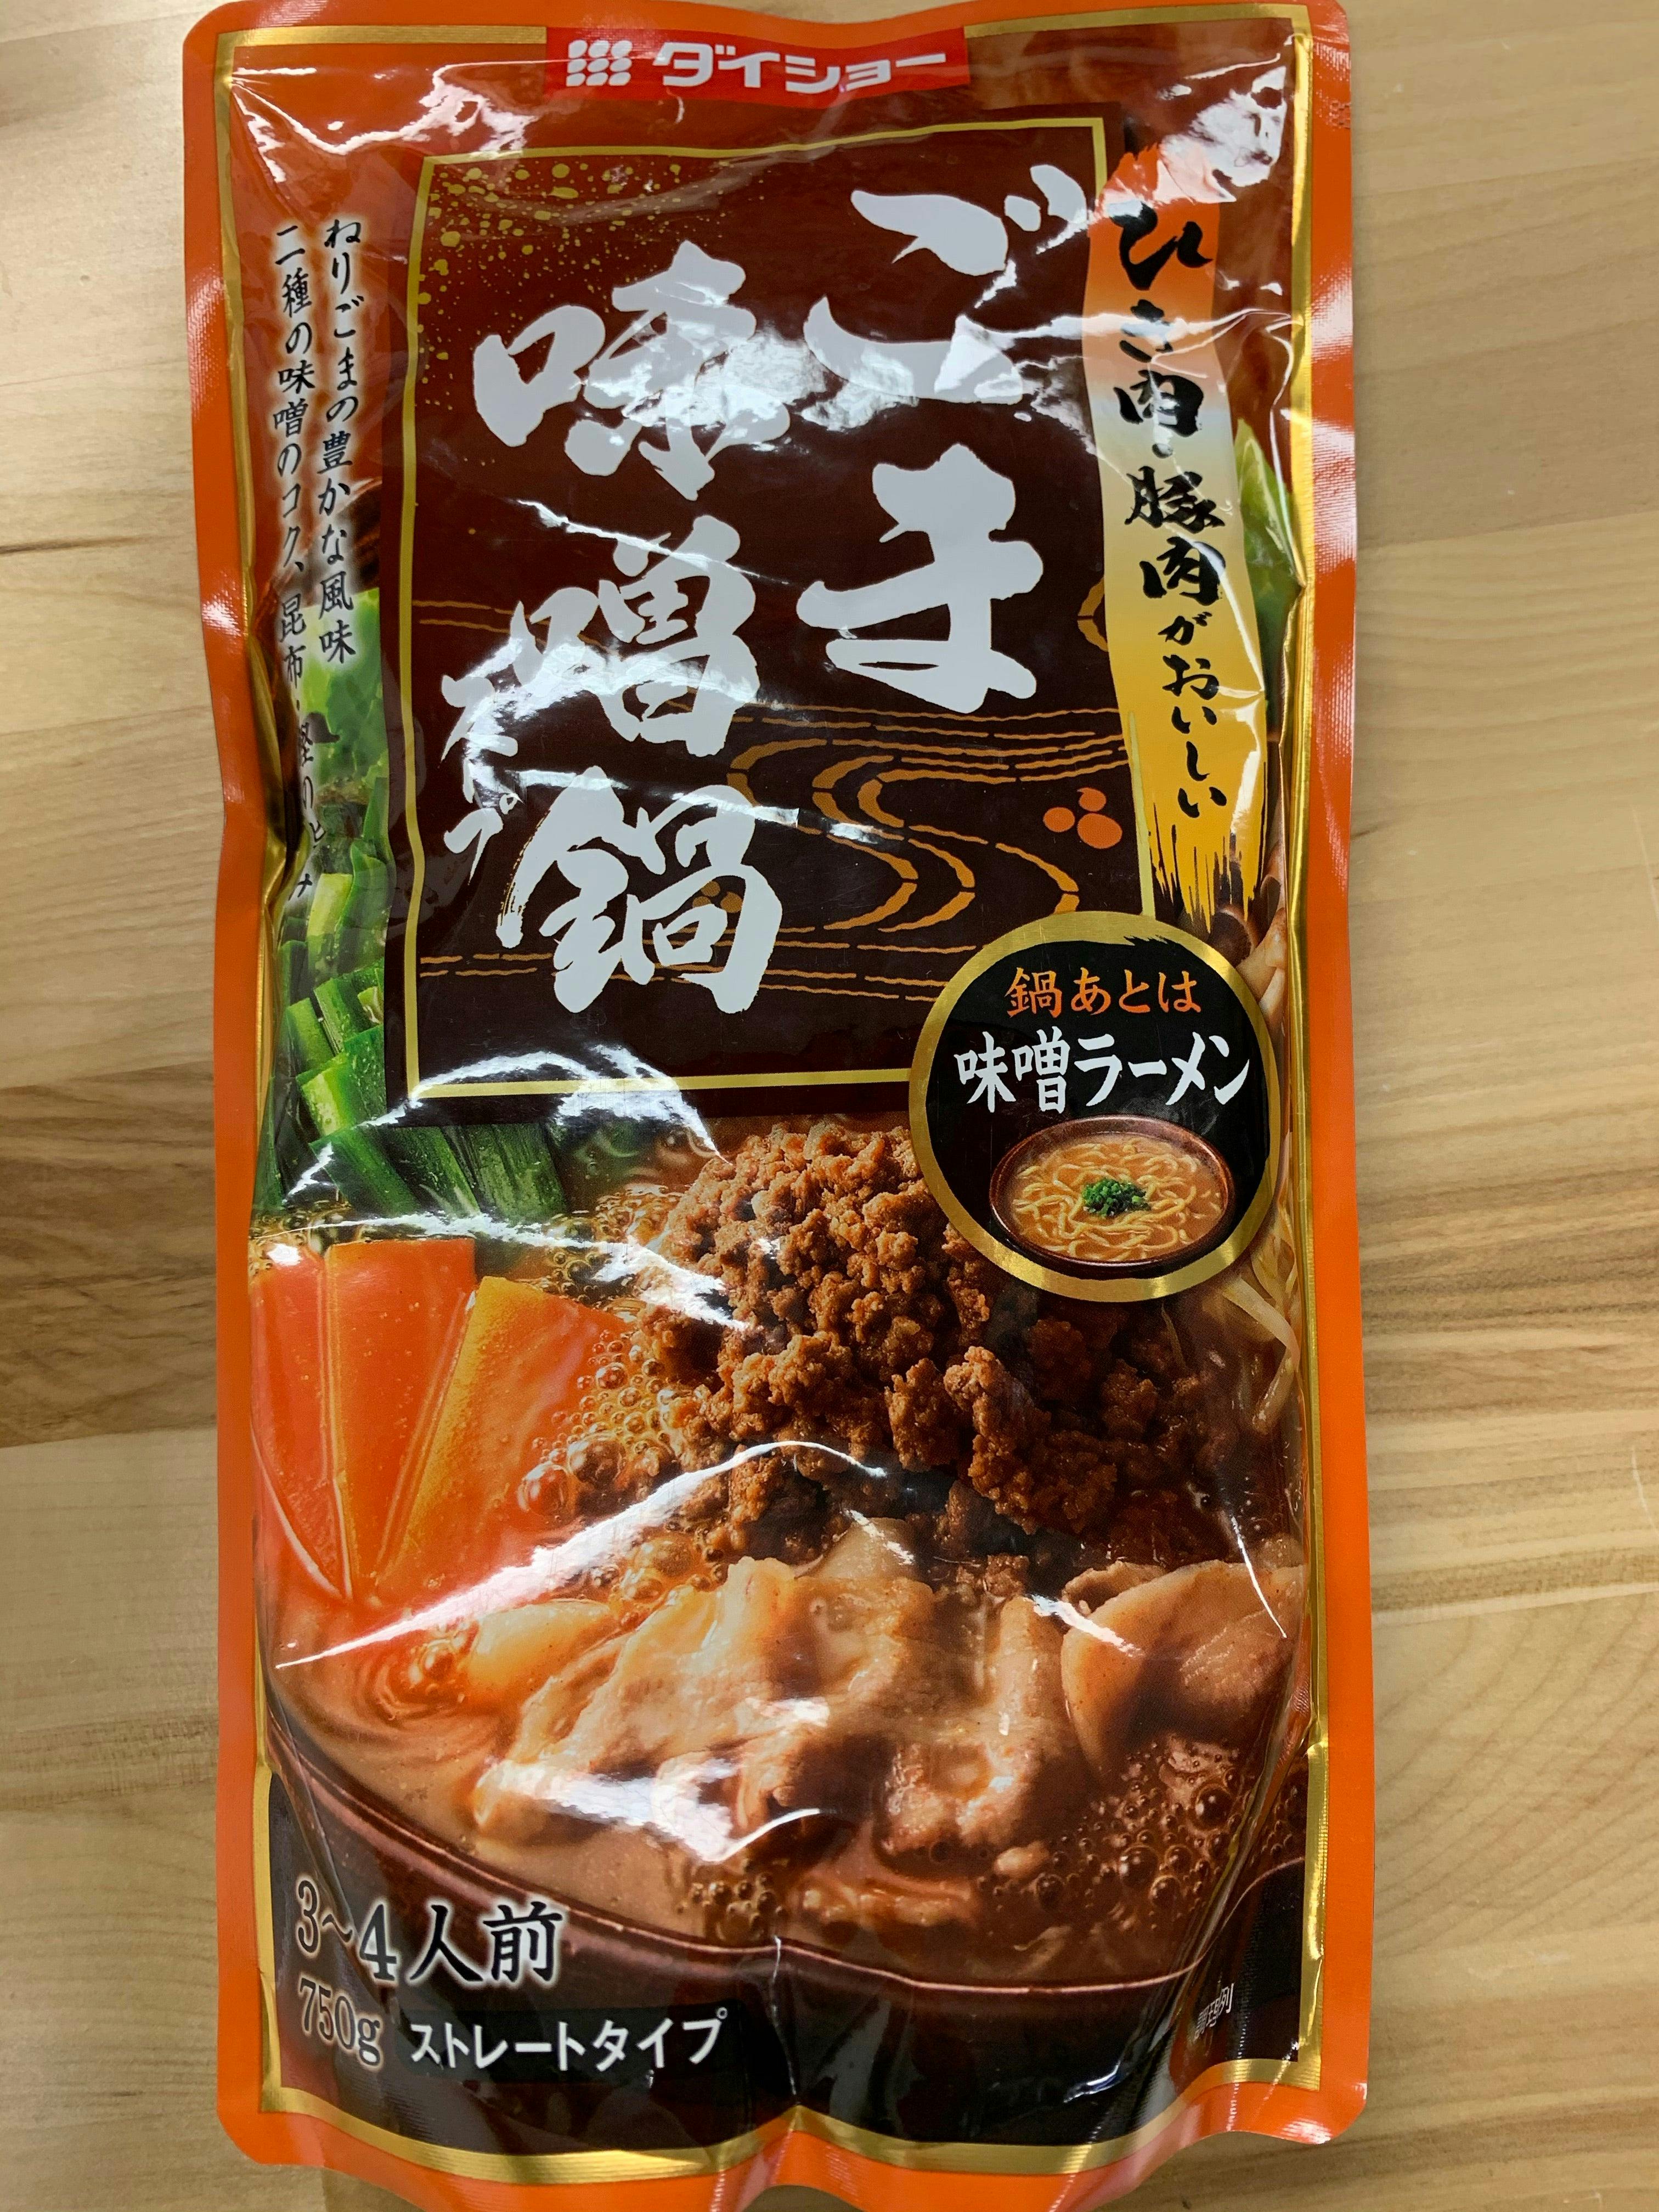 日本进口 芝麻豚骨味增锅 火锅锅底